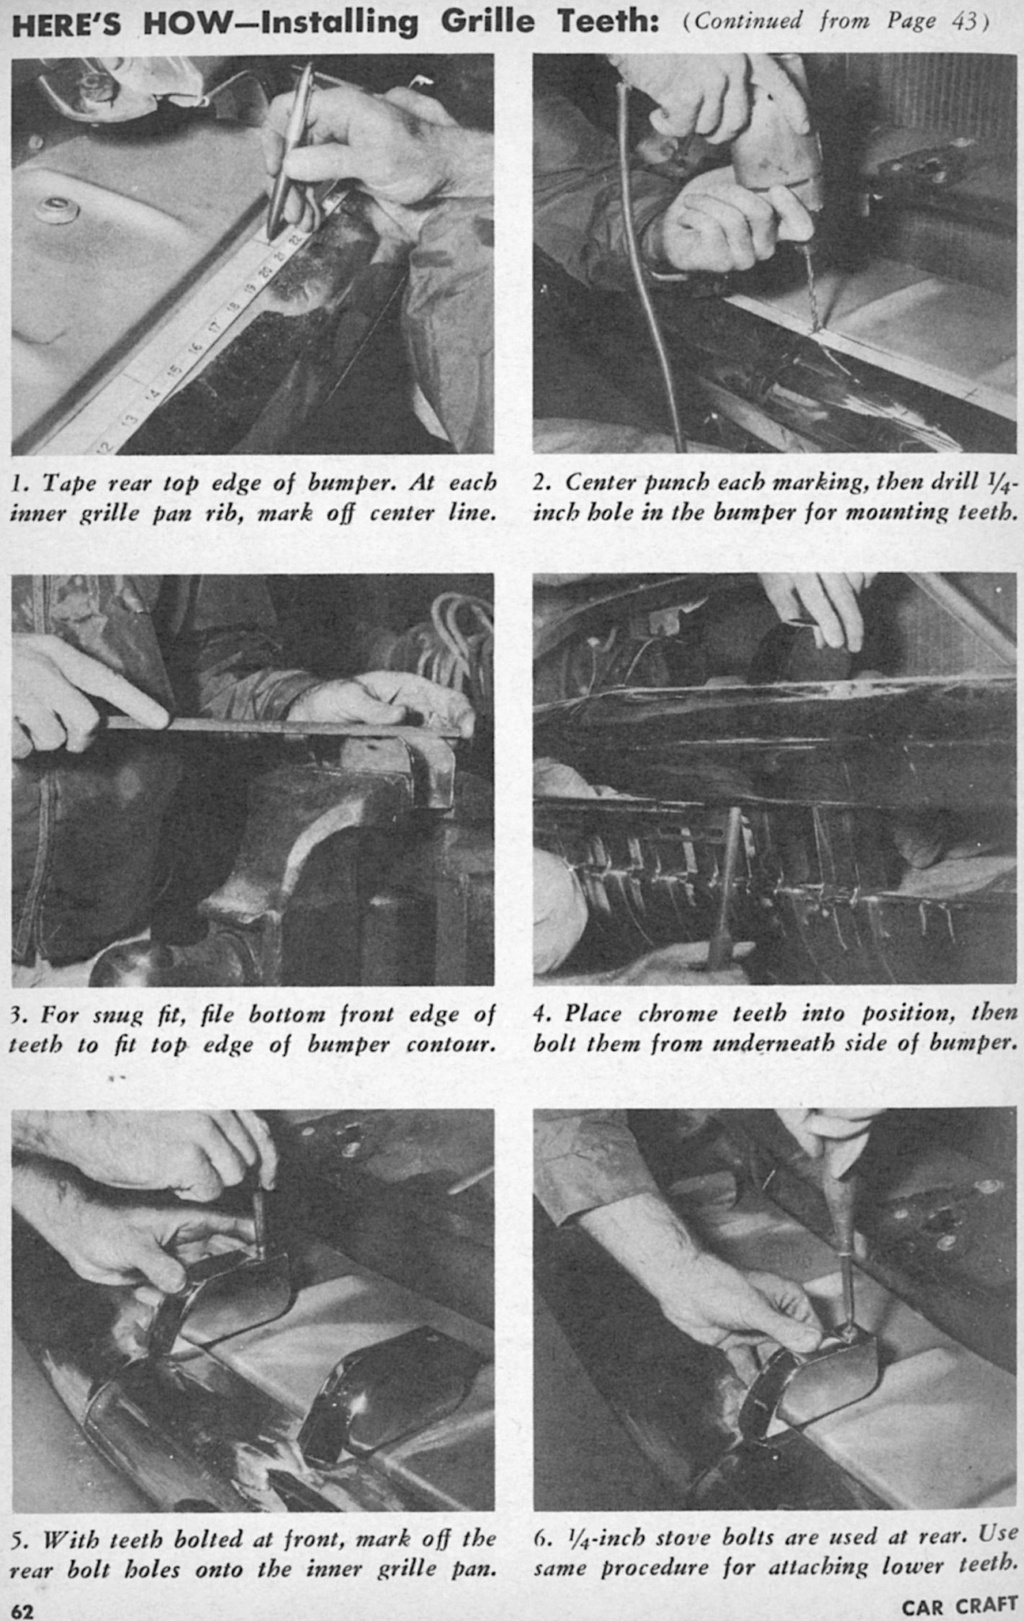 Car Craft -June 1955 32902210